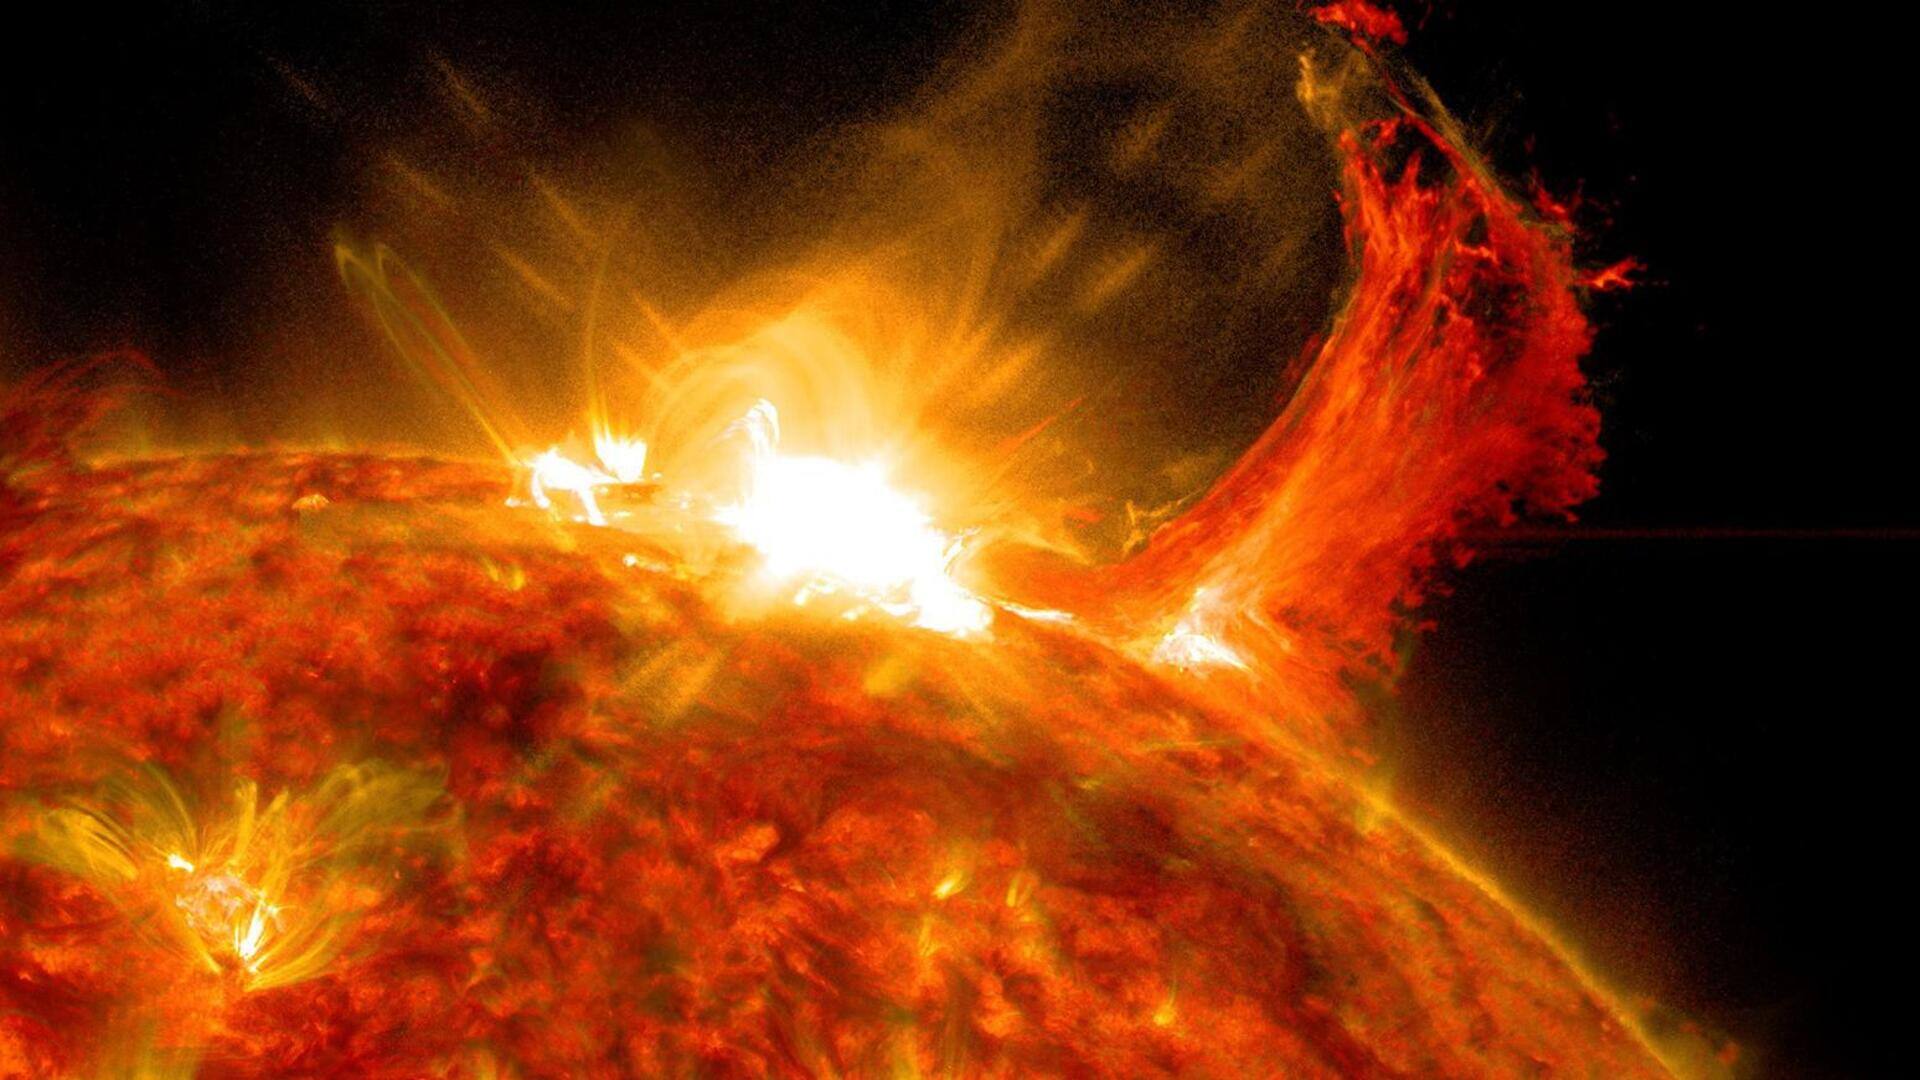 सनस्पॉट में विस्फोट के बाद उत्पन्न हुआ M-श्रेणी का सोलर फ्लेयर, बना रेडियो ब्लैकआउट का कारण